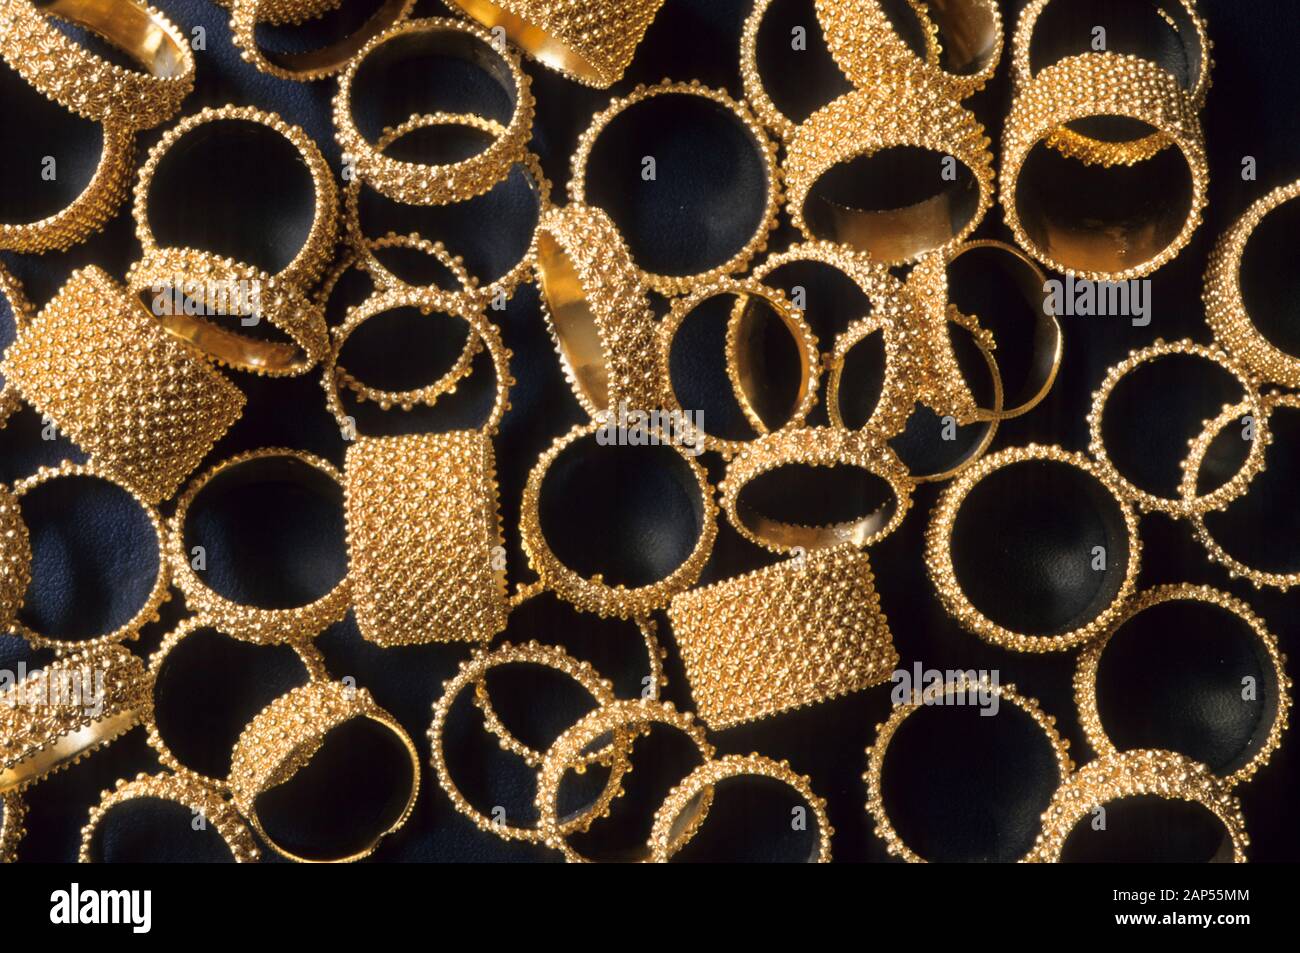 Sardinian rings Stock Photo